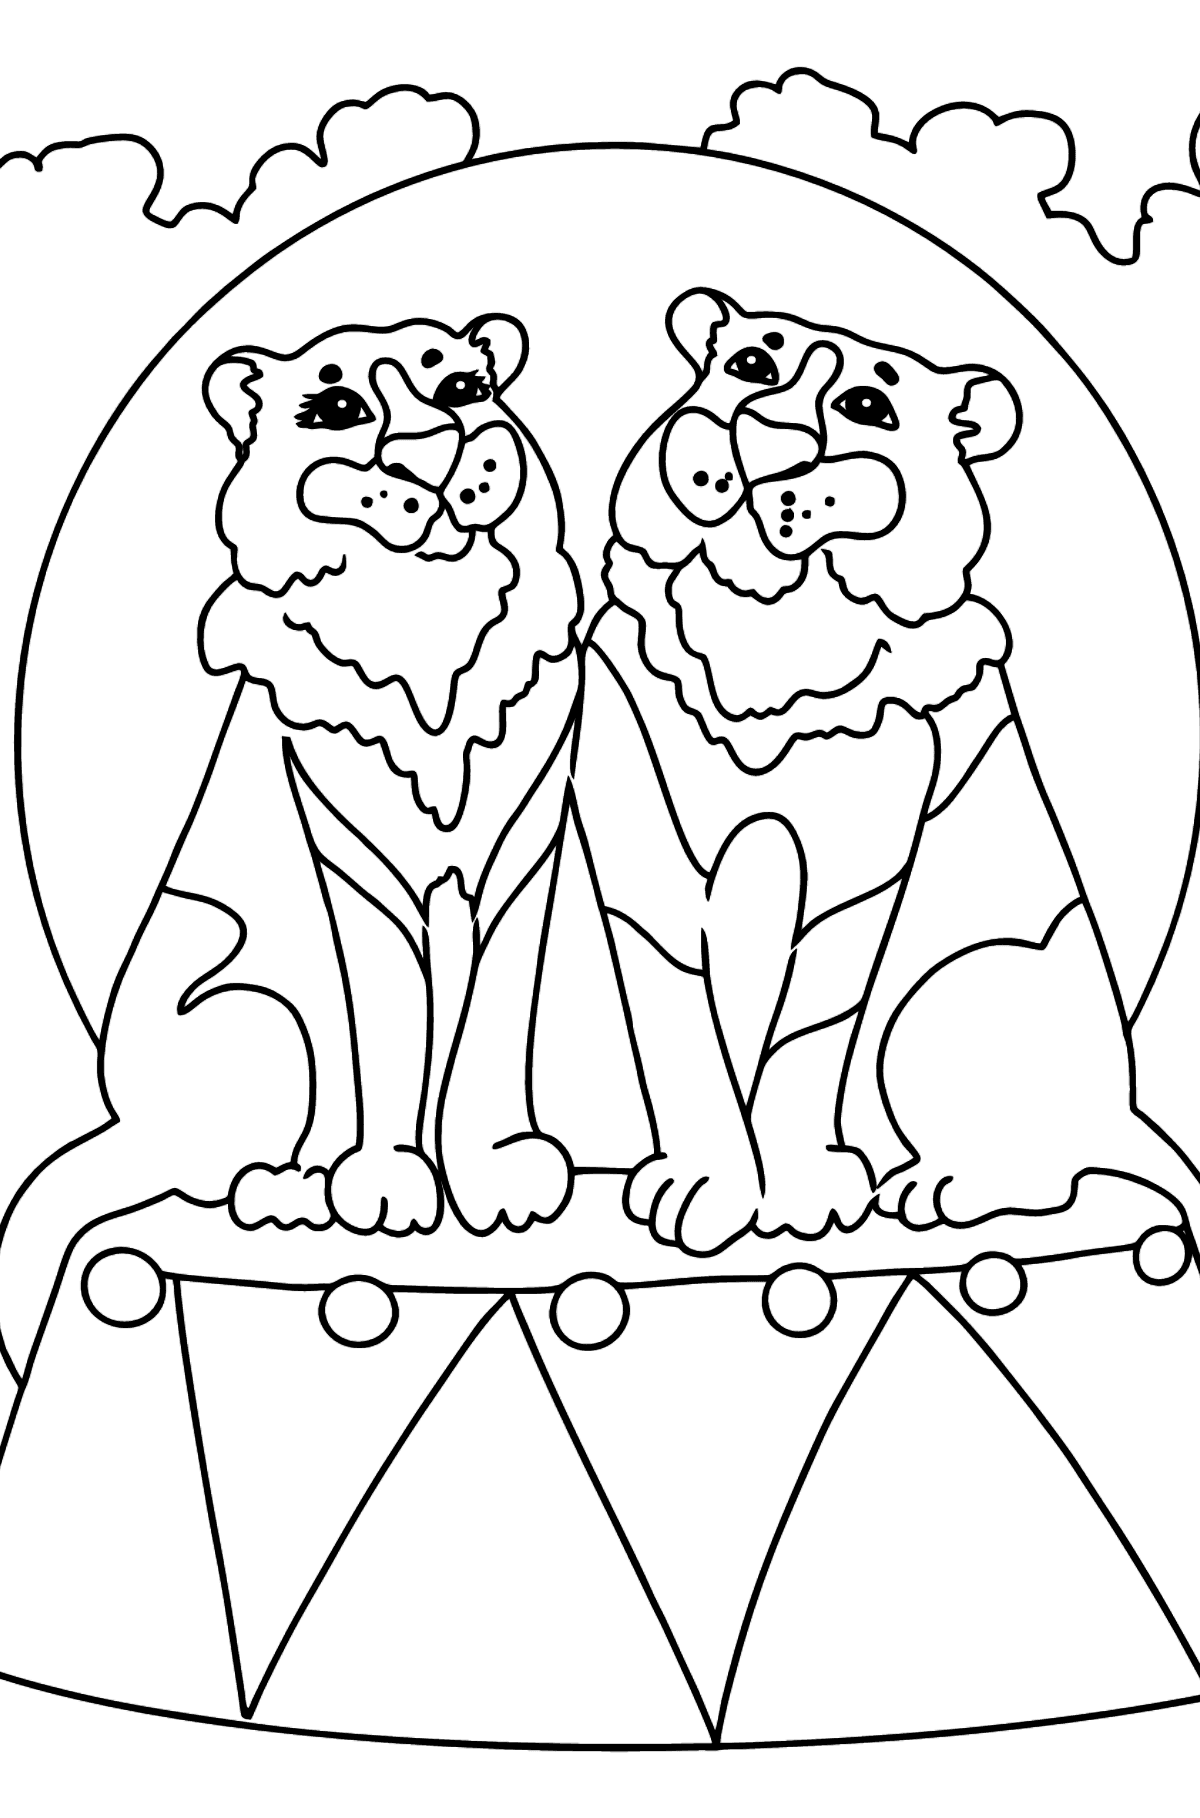 Desenho de tigres no circo para colorir - Imagens para Colorir para Crianças